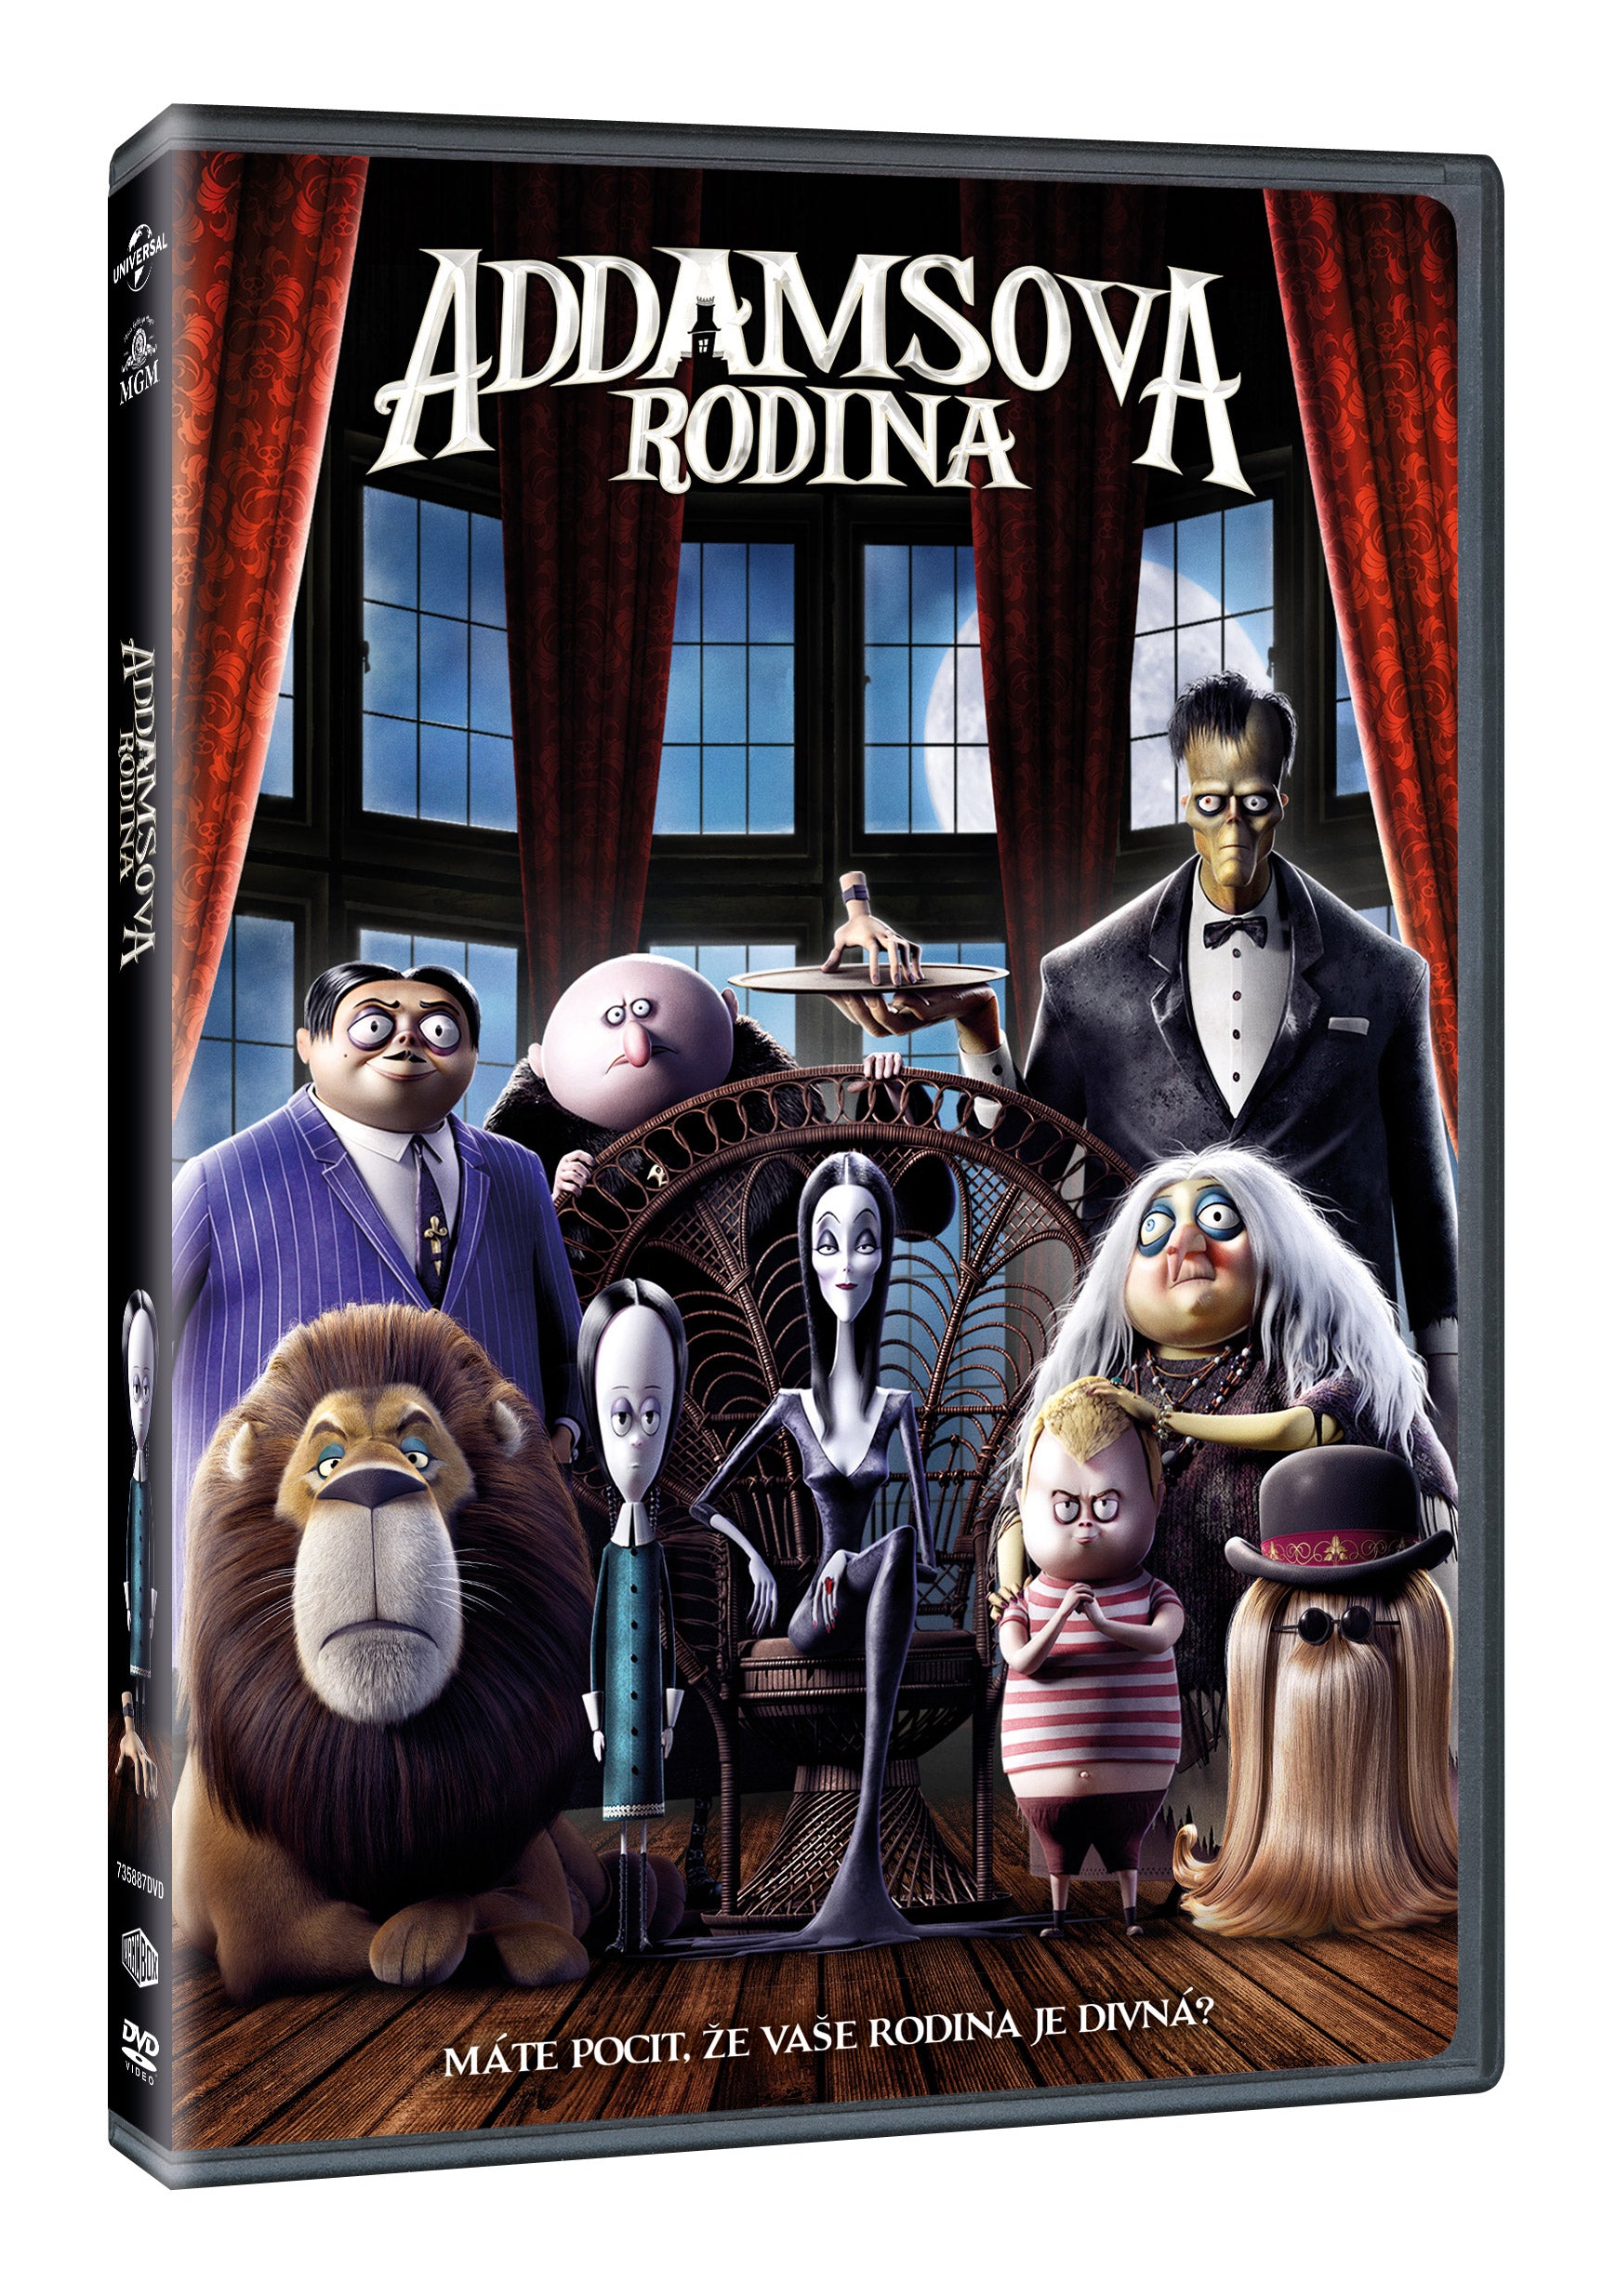 Addamsova rodina DVD / The Addams Family